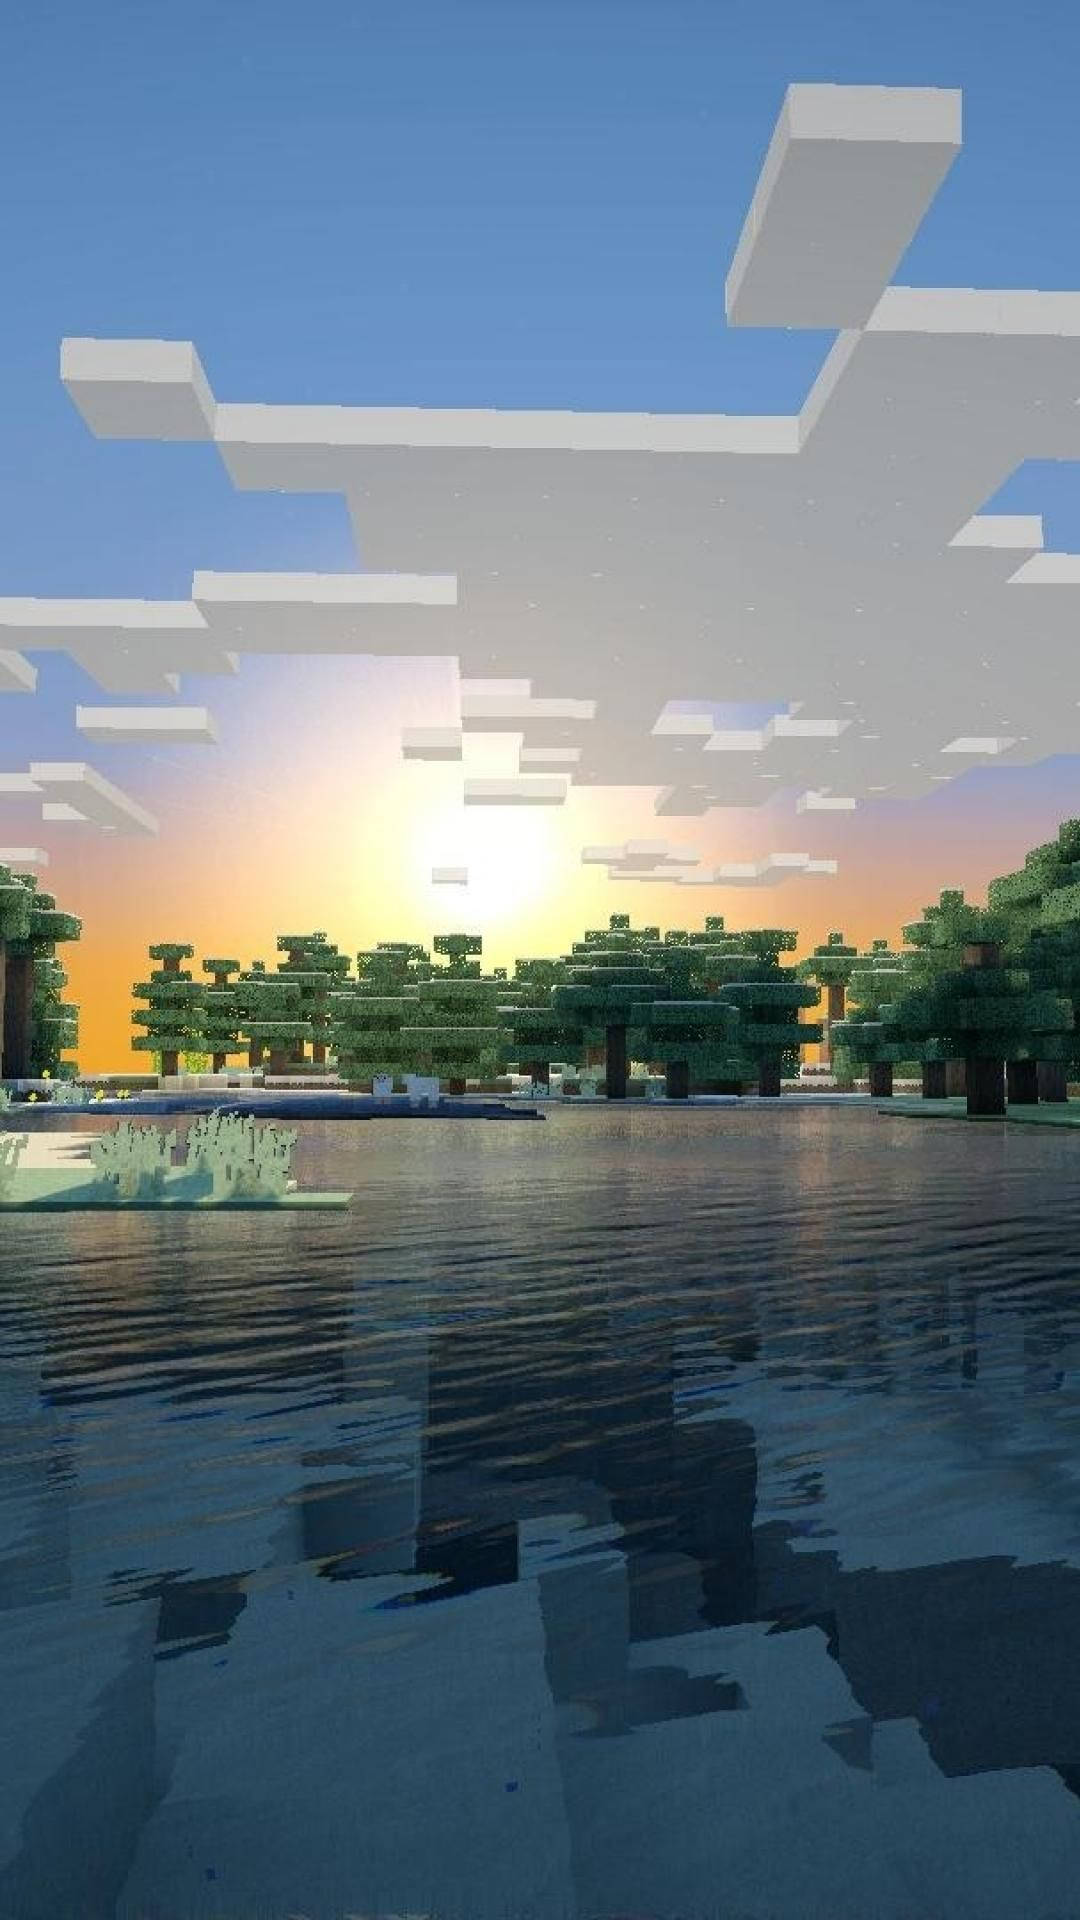 Papelde Parede Do Minecraft Com Vista Para A Natureza No Celular. Papel de Parede